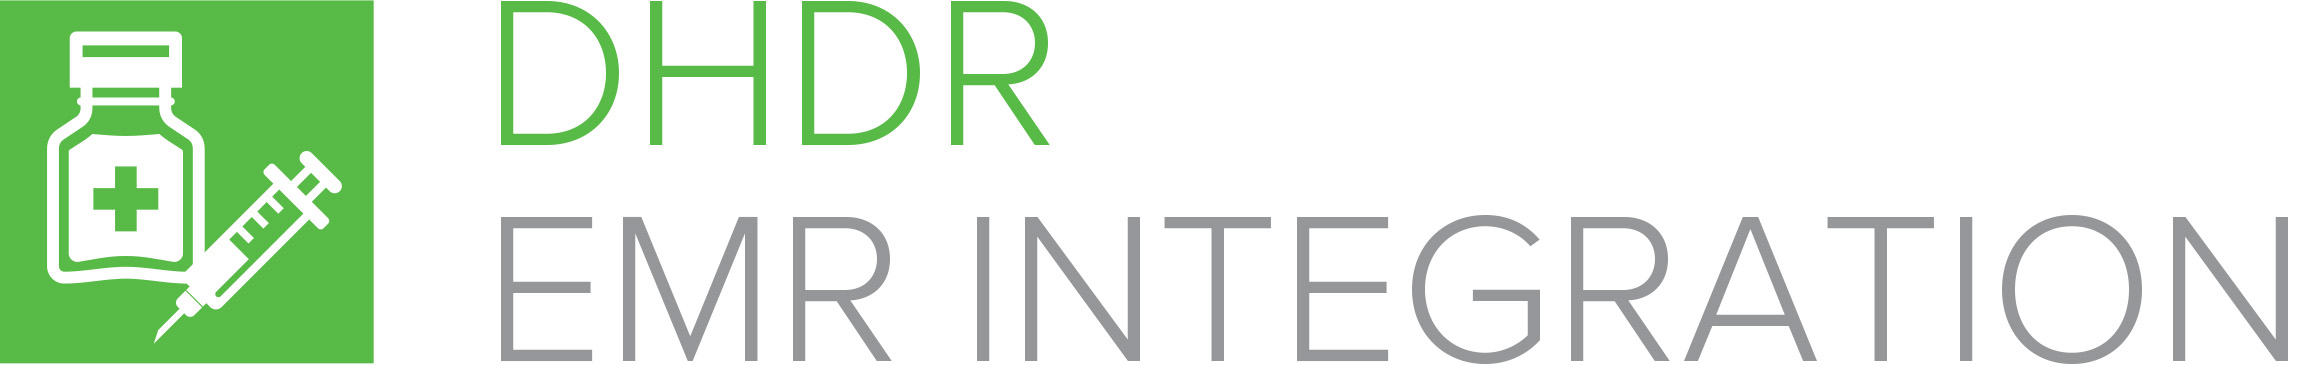 DHDR EMR INTEGRATION Logo.jpg